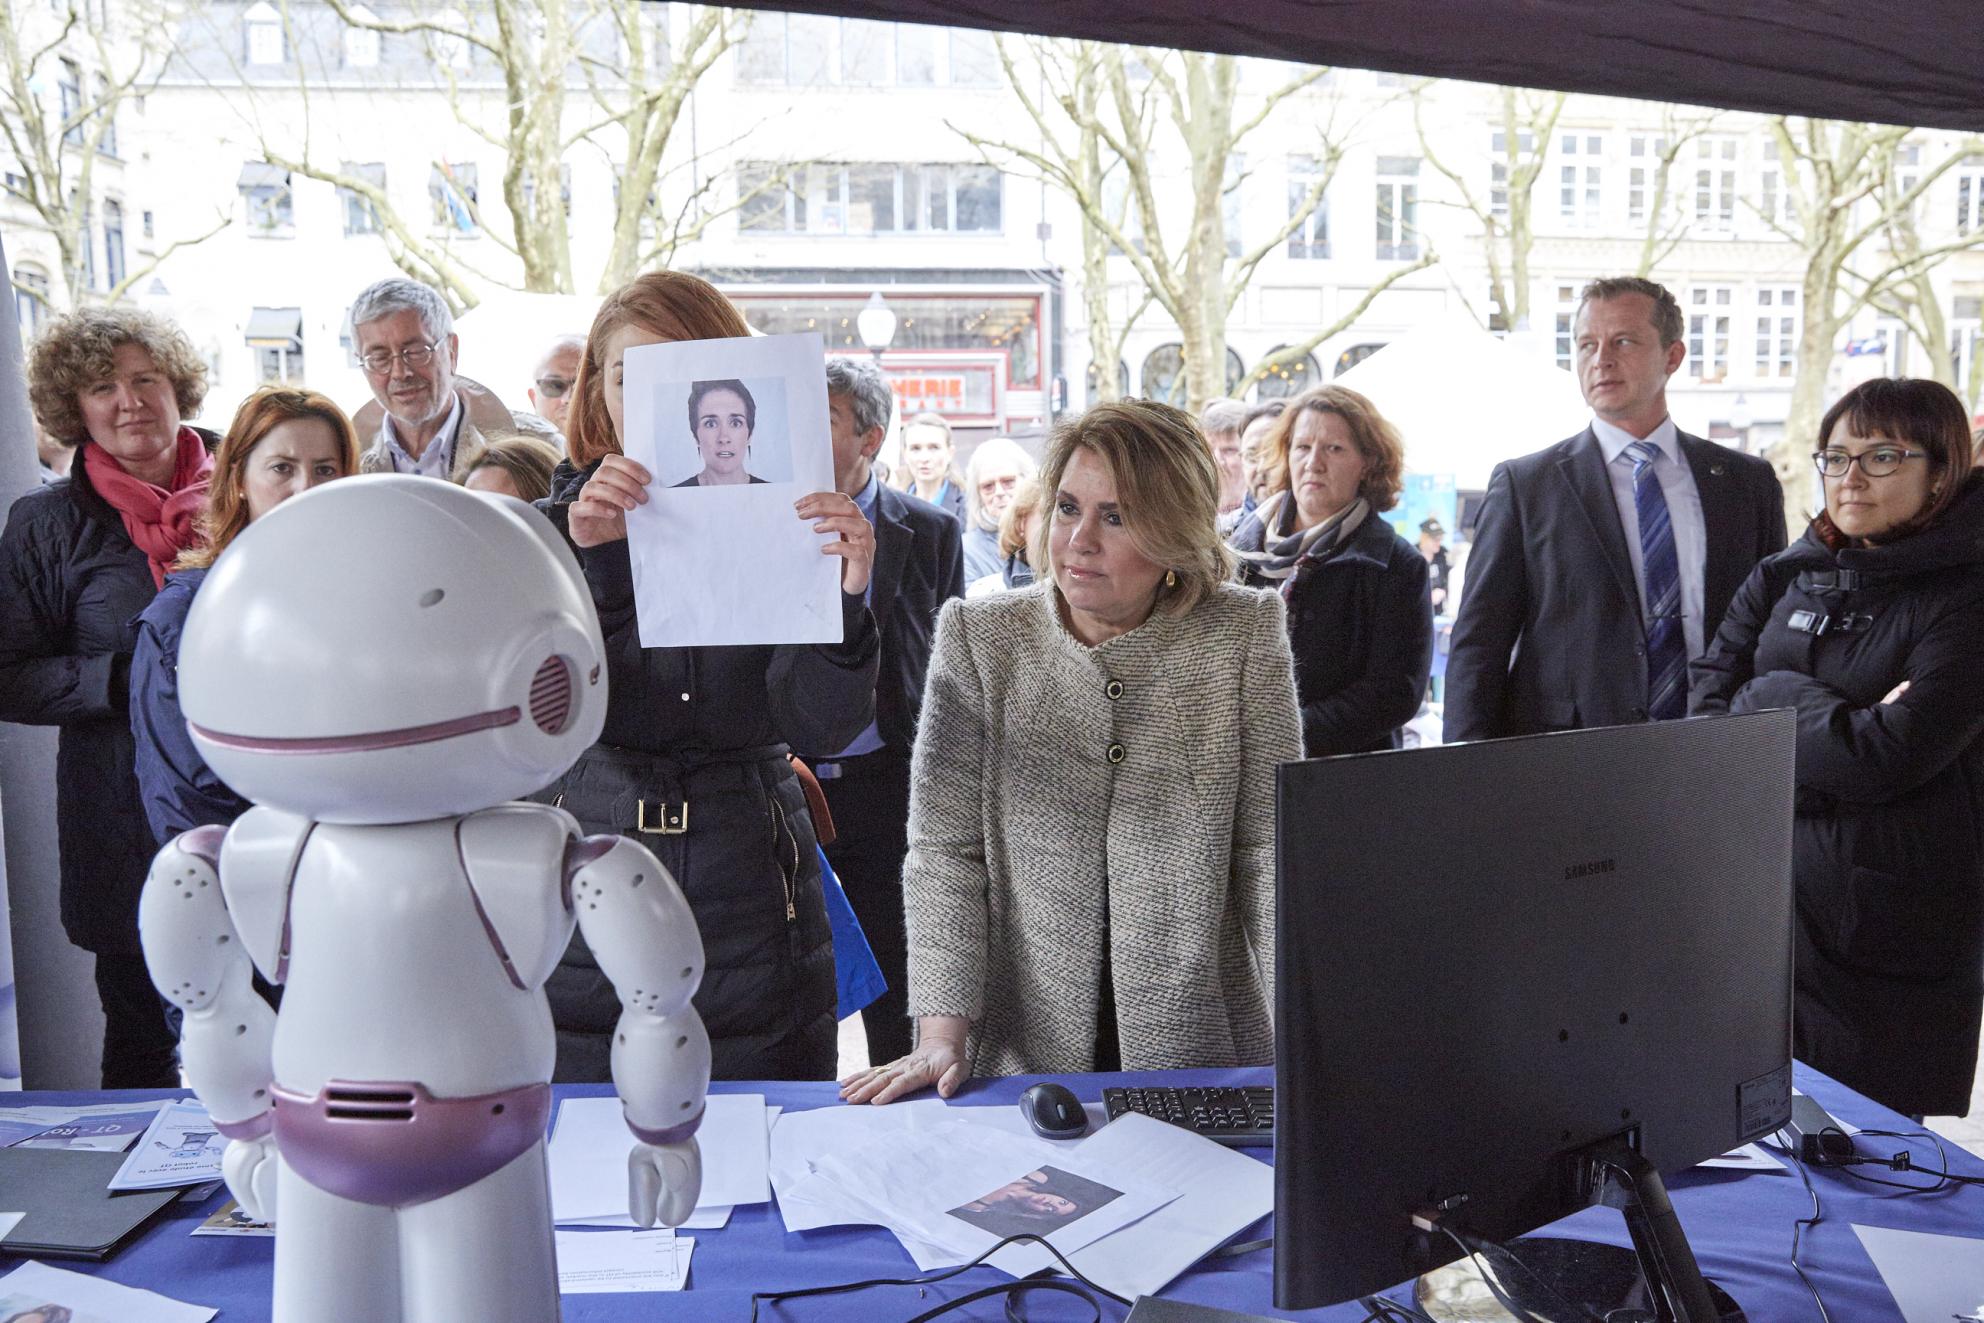 la grande duchesse et le robot QTrobot